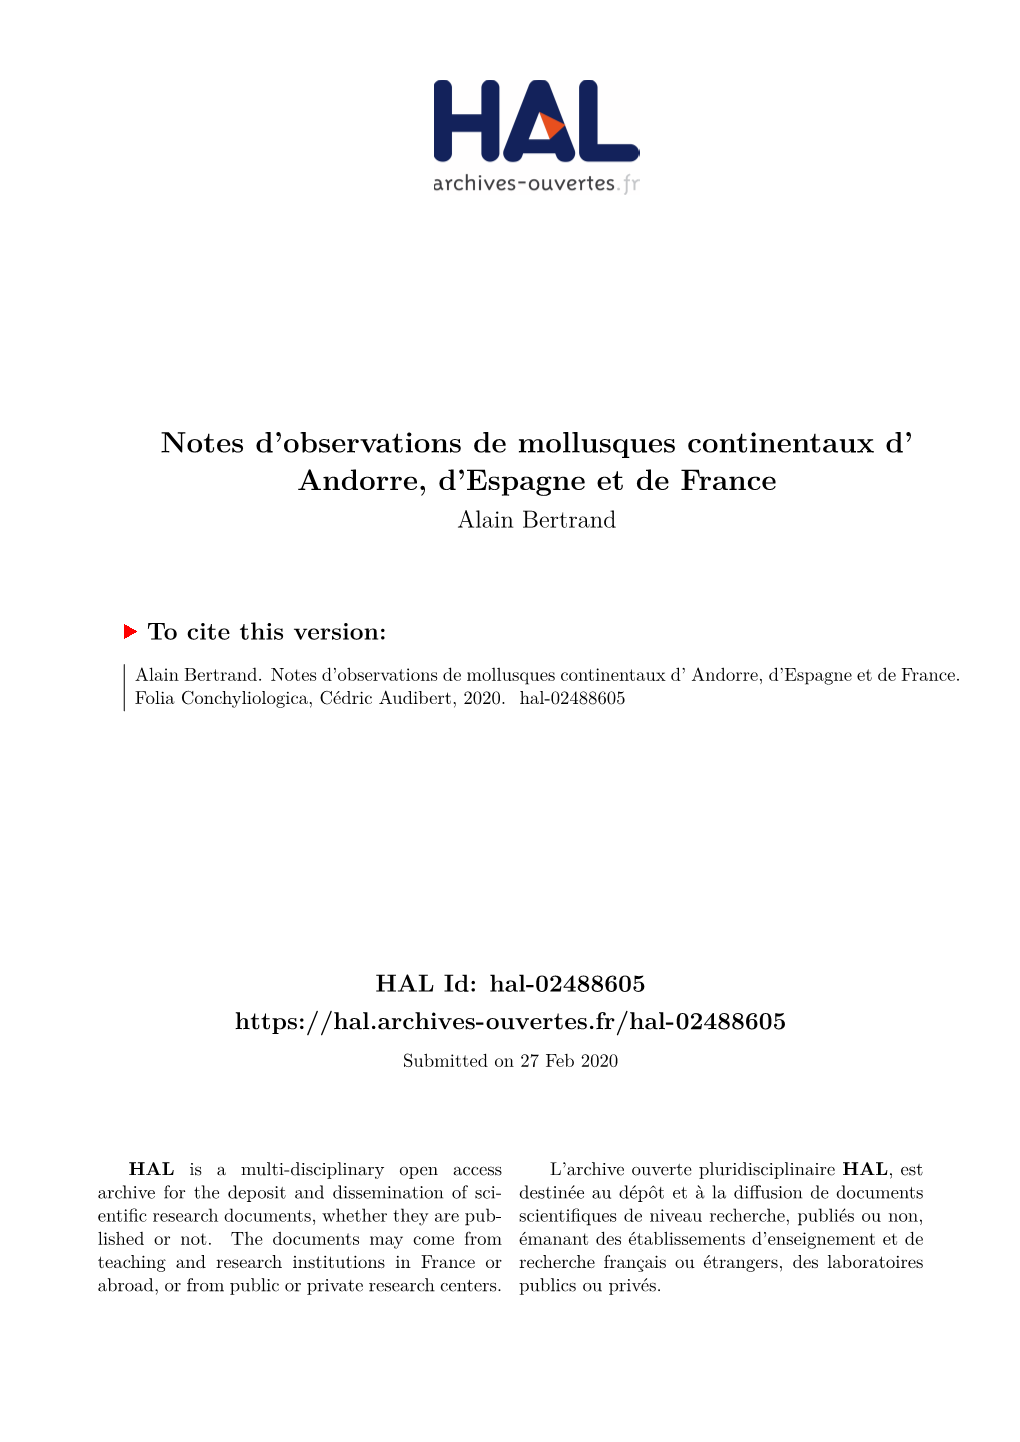 Notes D'observations De Mollusques Continentaux D' Andorre, D'espagne